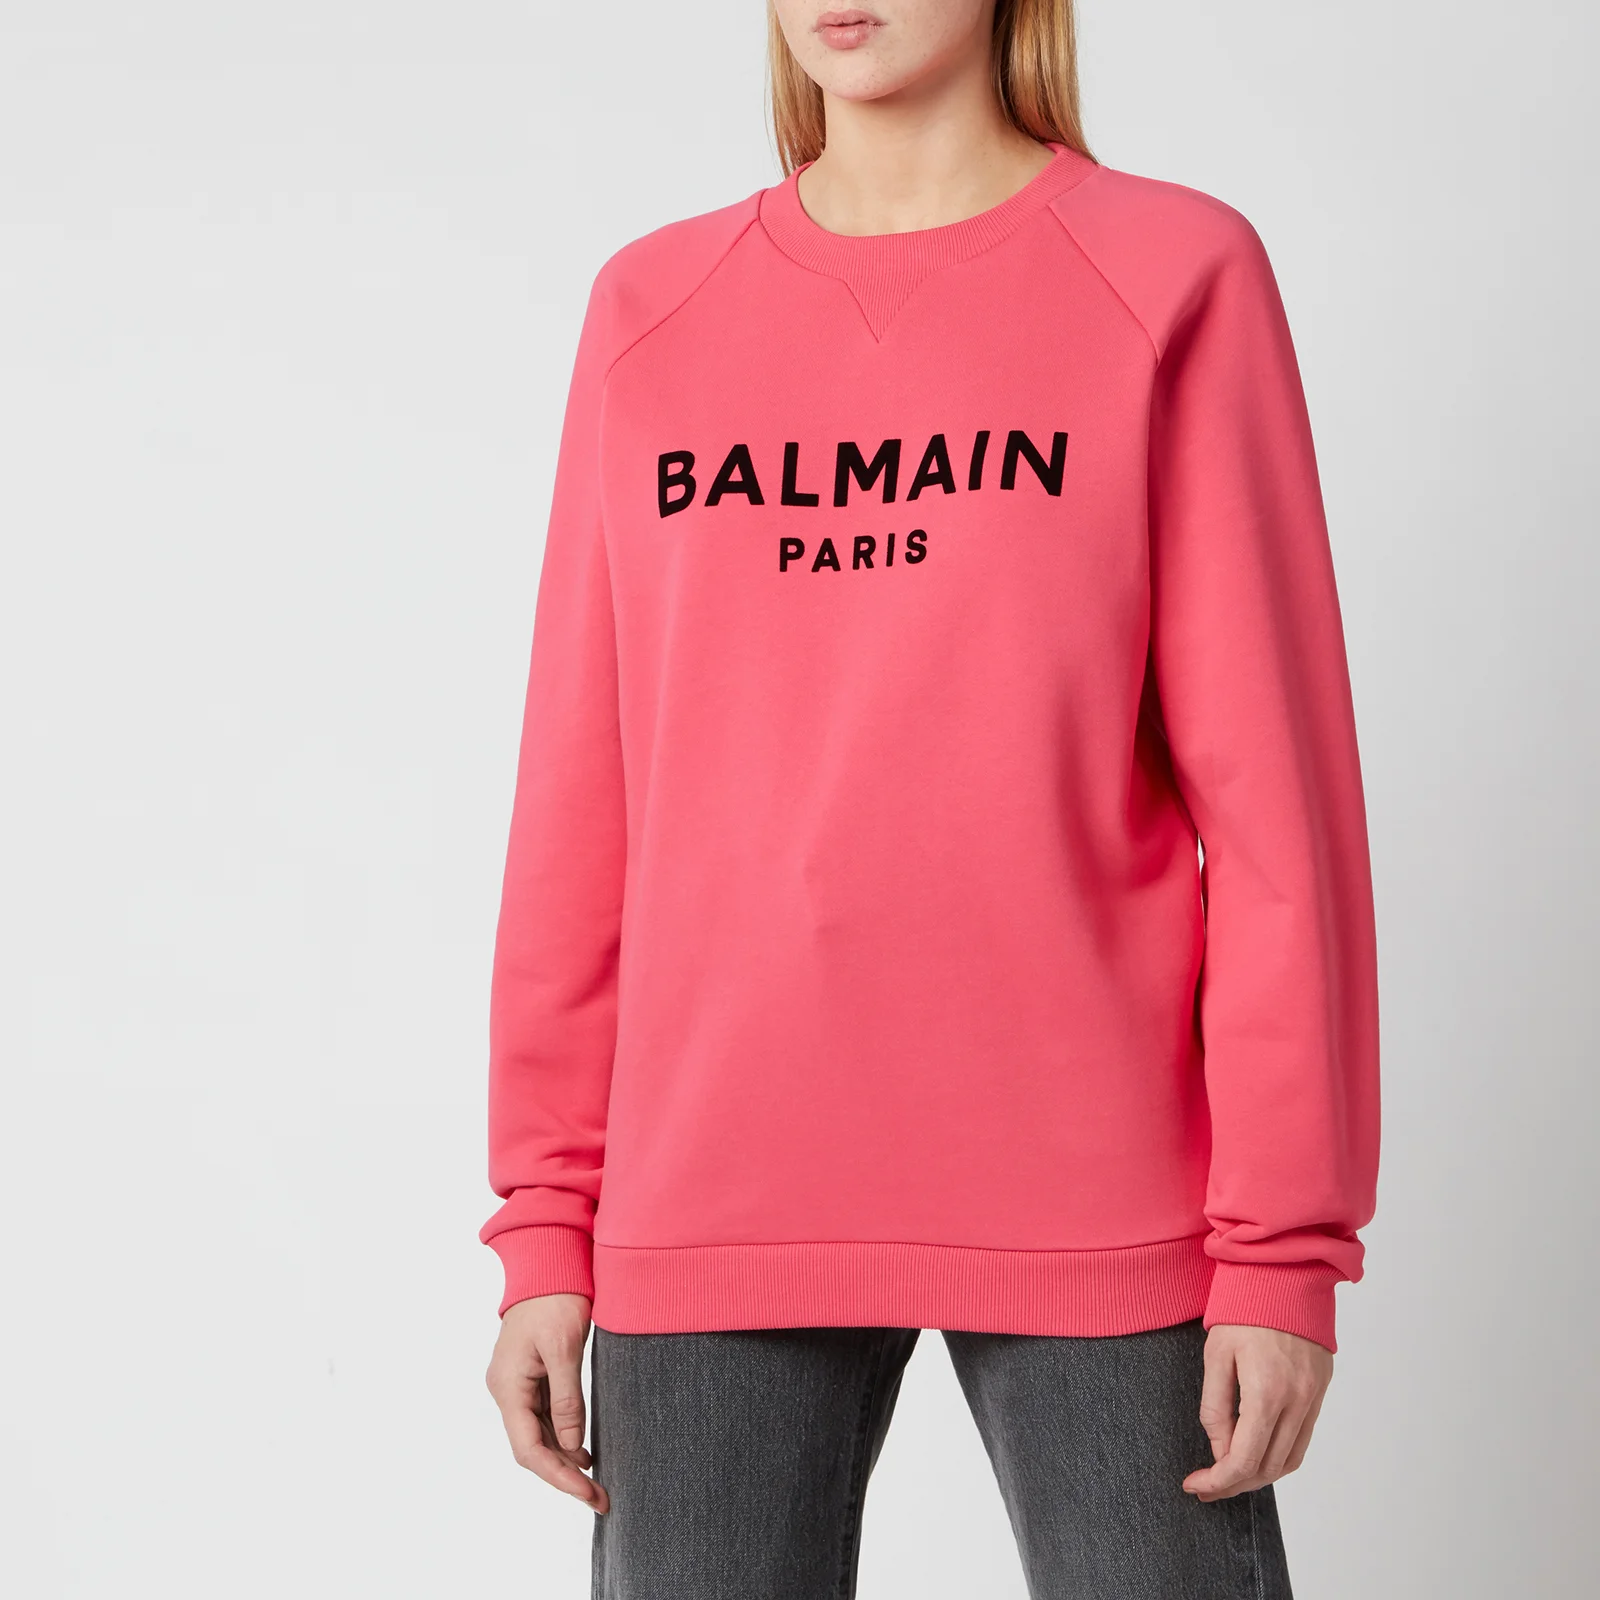 Balmain Women's Flocked Logo Sweatshirt - Fuchcia/Noir Image 1